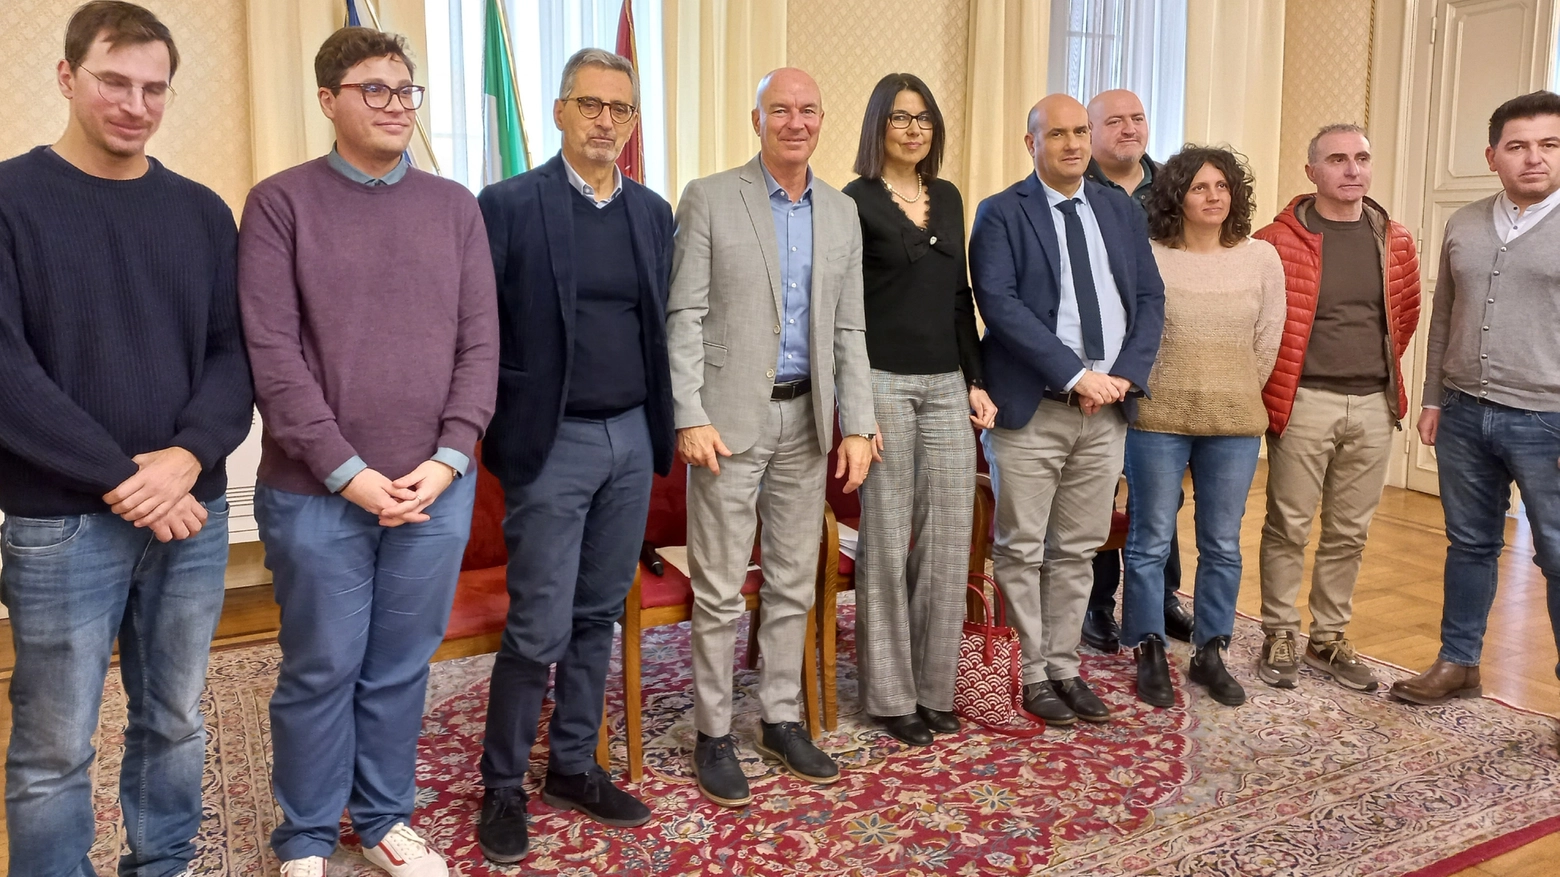 Il sindaco Salvetti insieme agli assessori Cepparello, Garufo e Simoncini in sala Cerimonie con le parti sindacali e arci invitate alla conferenza stampa